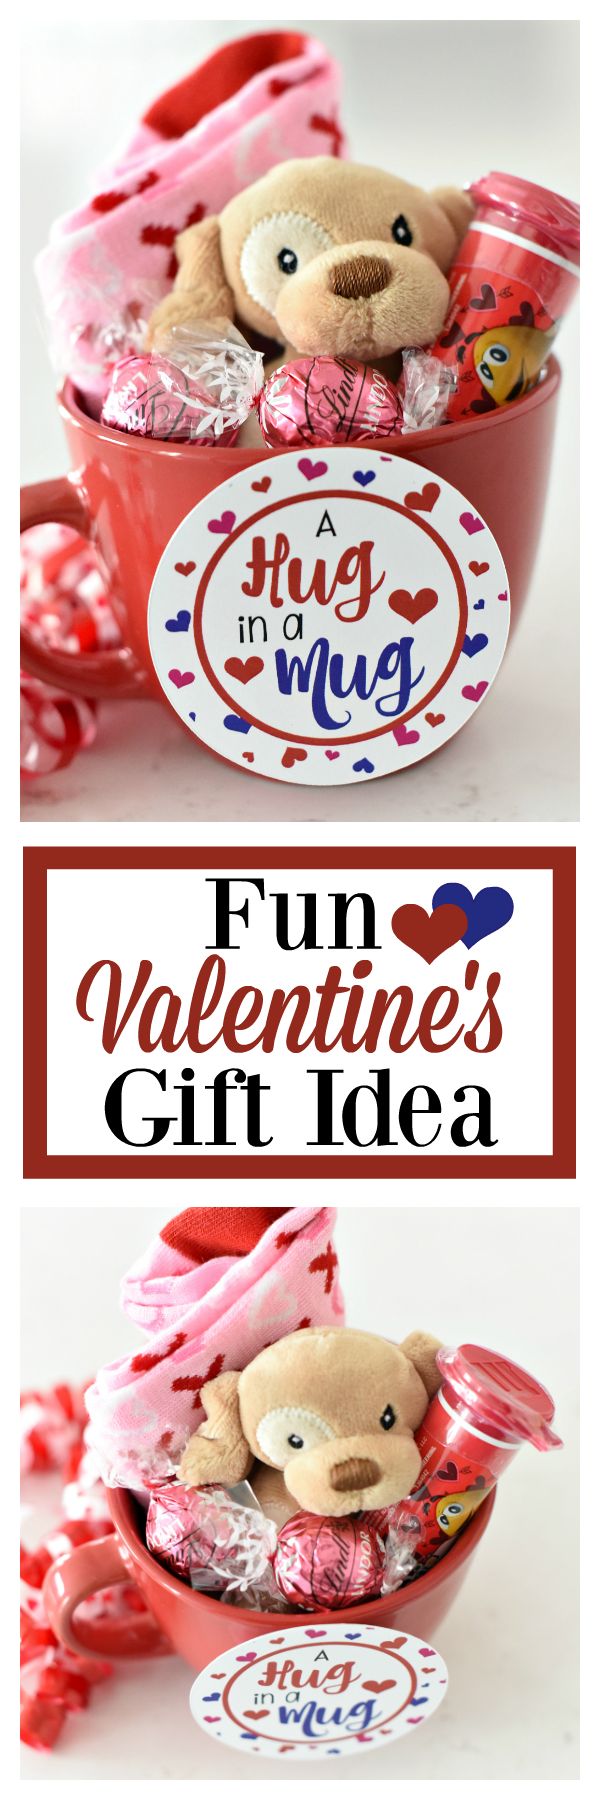 Fun Valentine's Day Gift Idea for kids